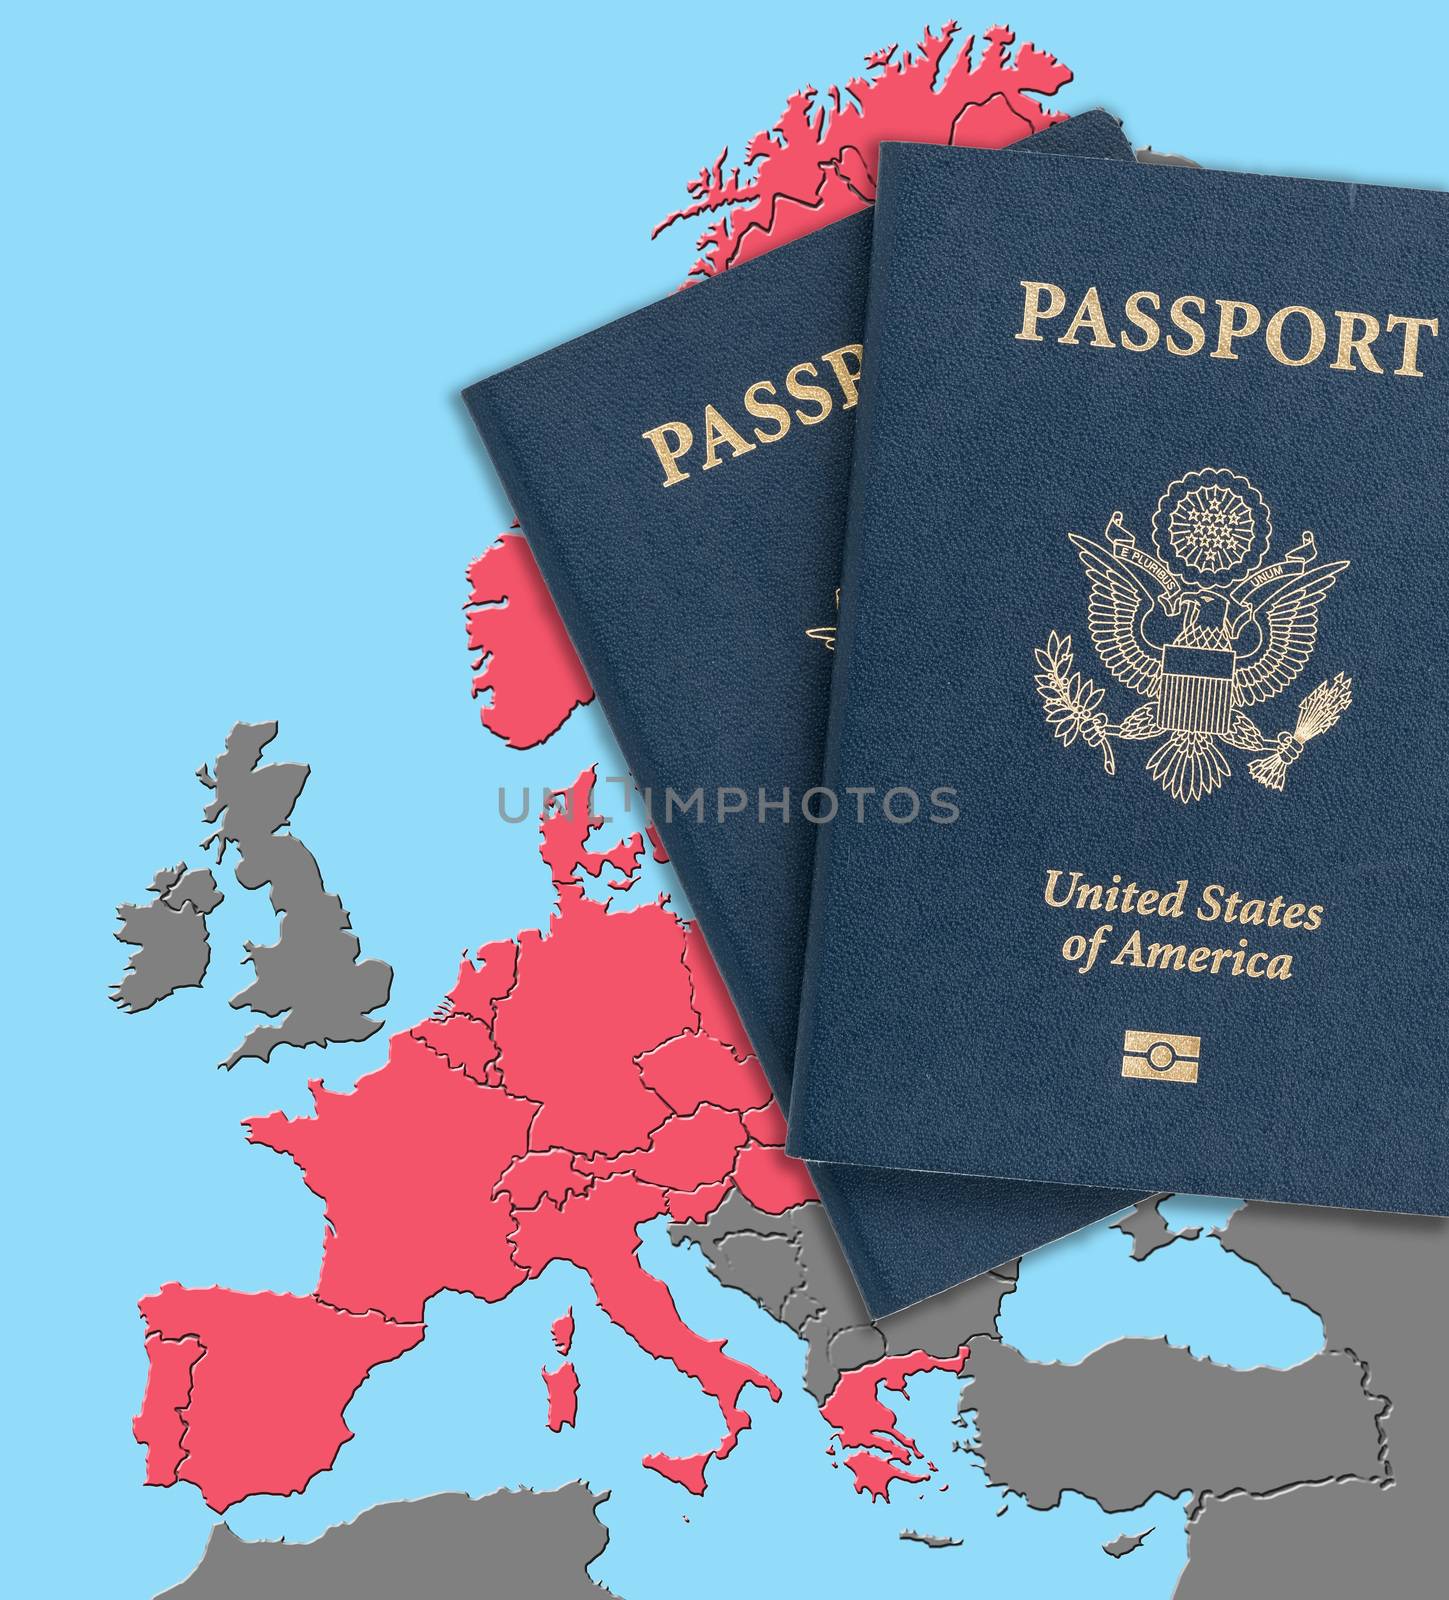 US passports on map of Schengen Zone by steheap